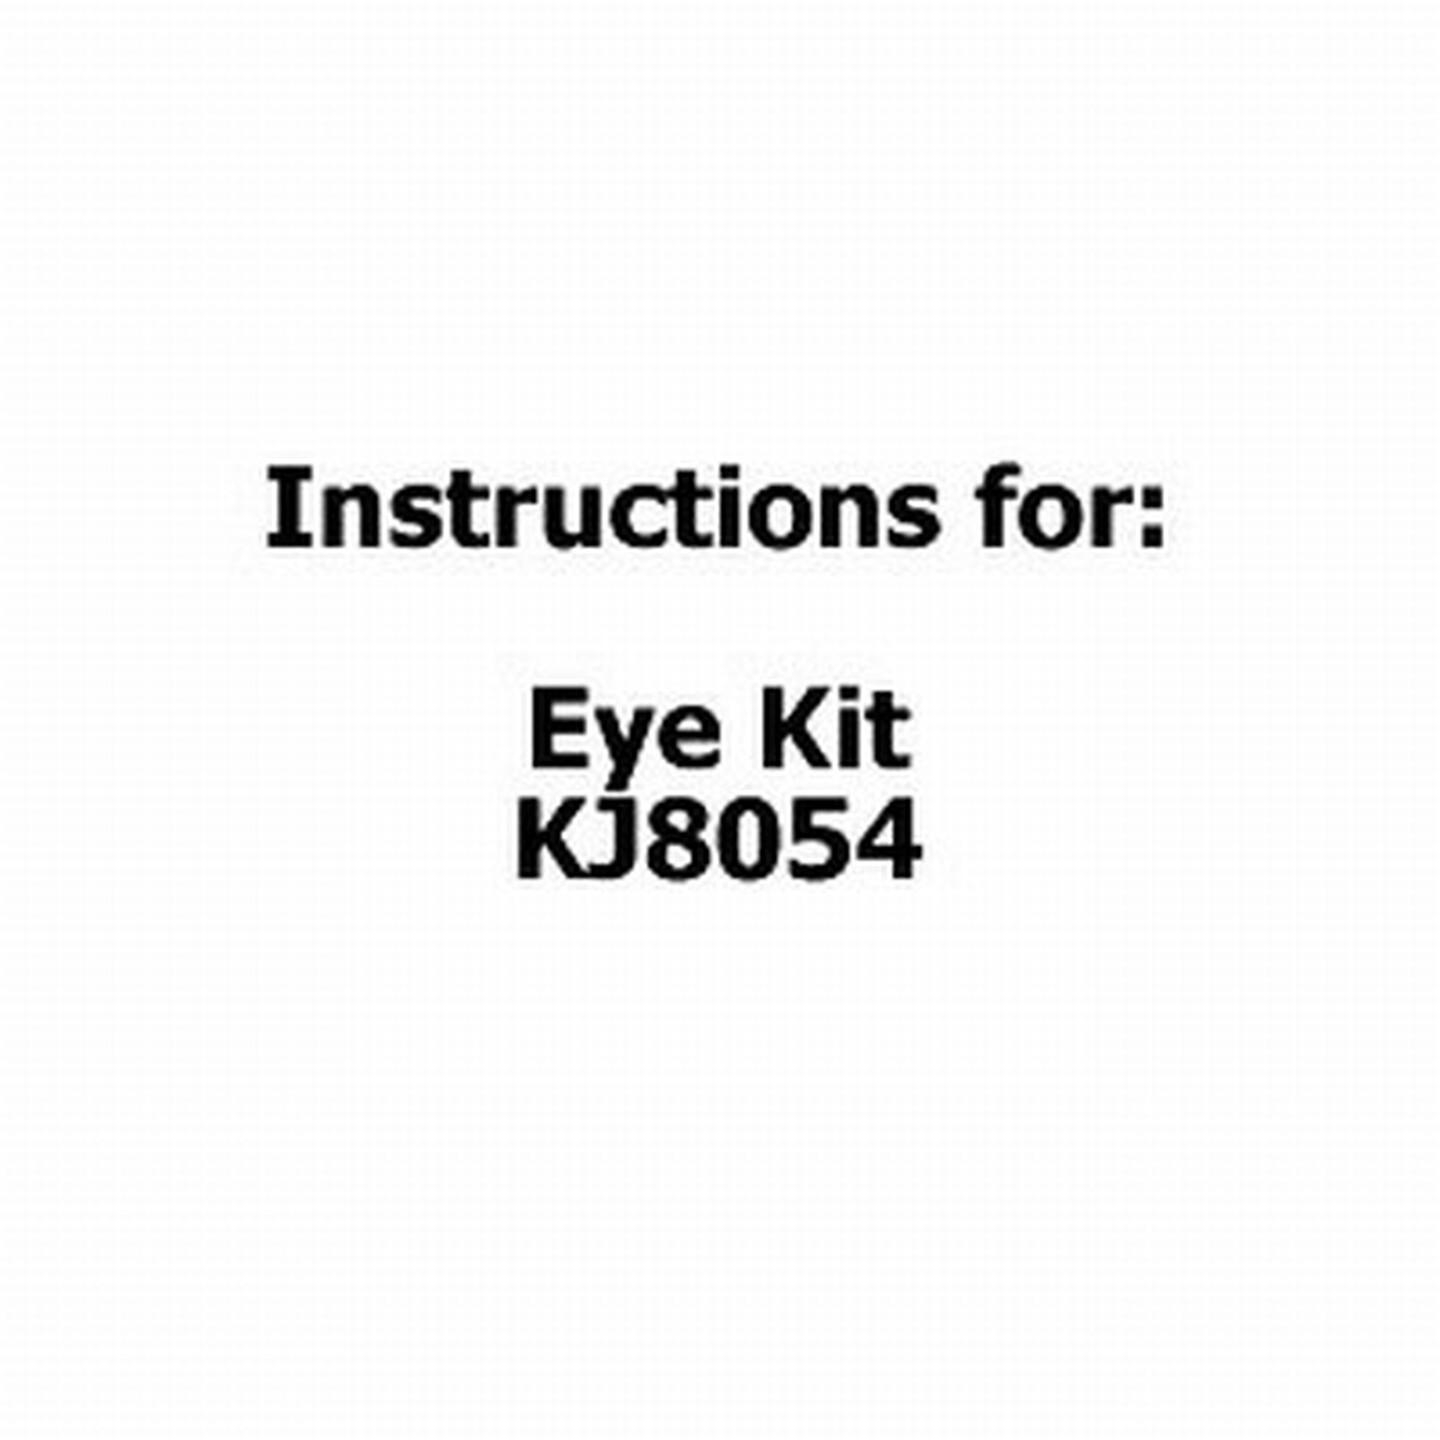 Instructions for Eye Kit KJ8054